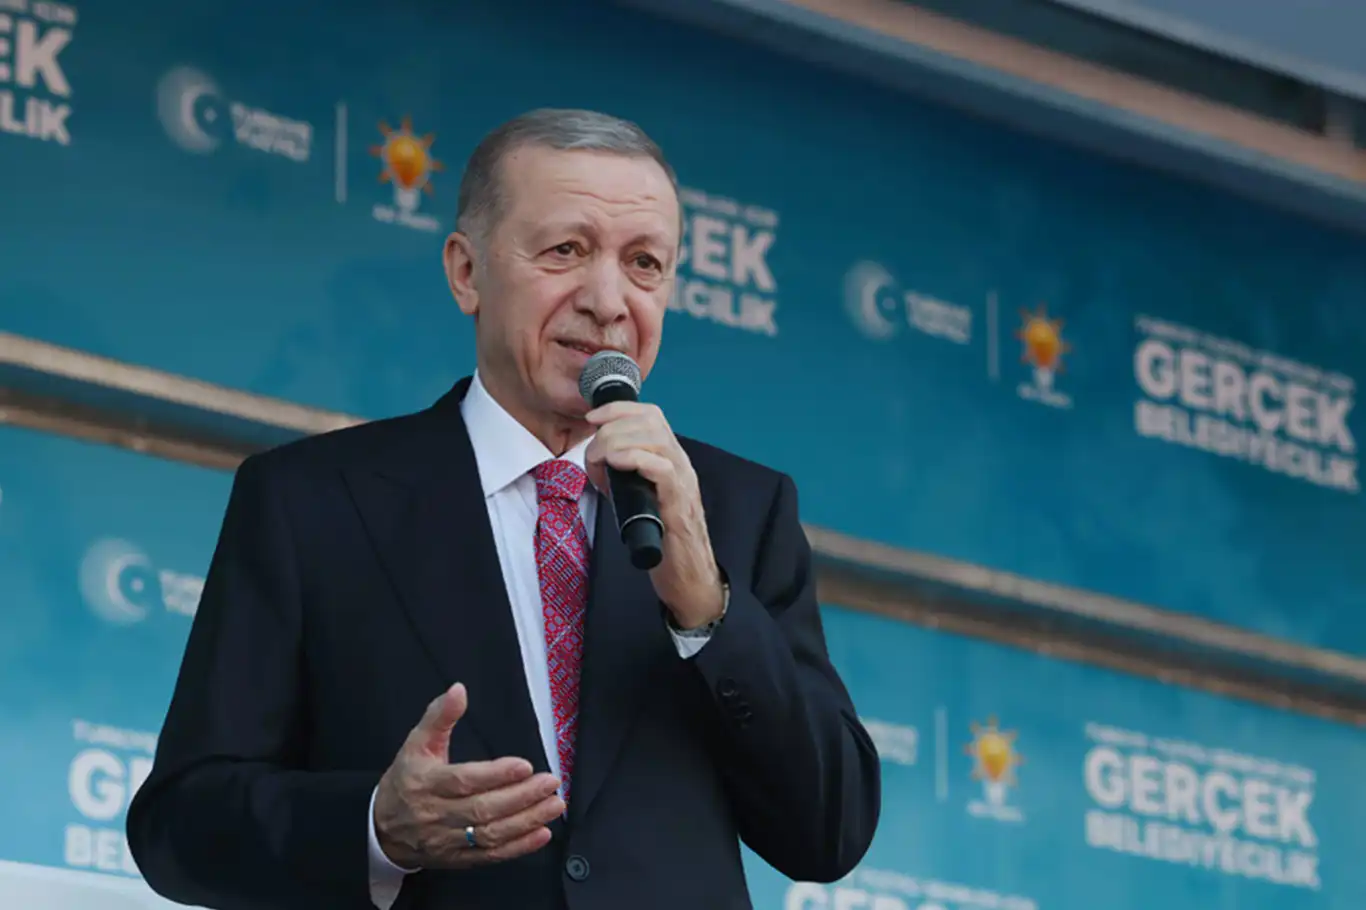 Erdoğan pledges collaboration for safe, prosperous Turkish cities